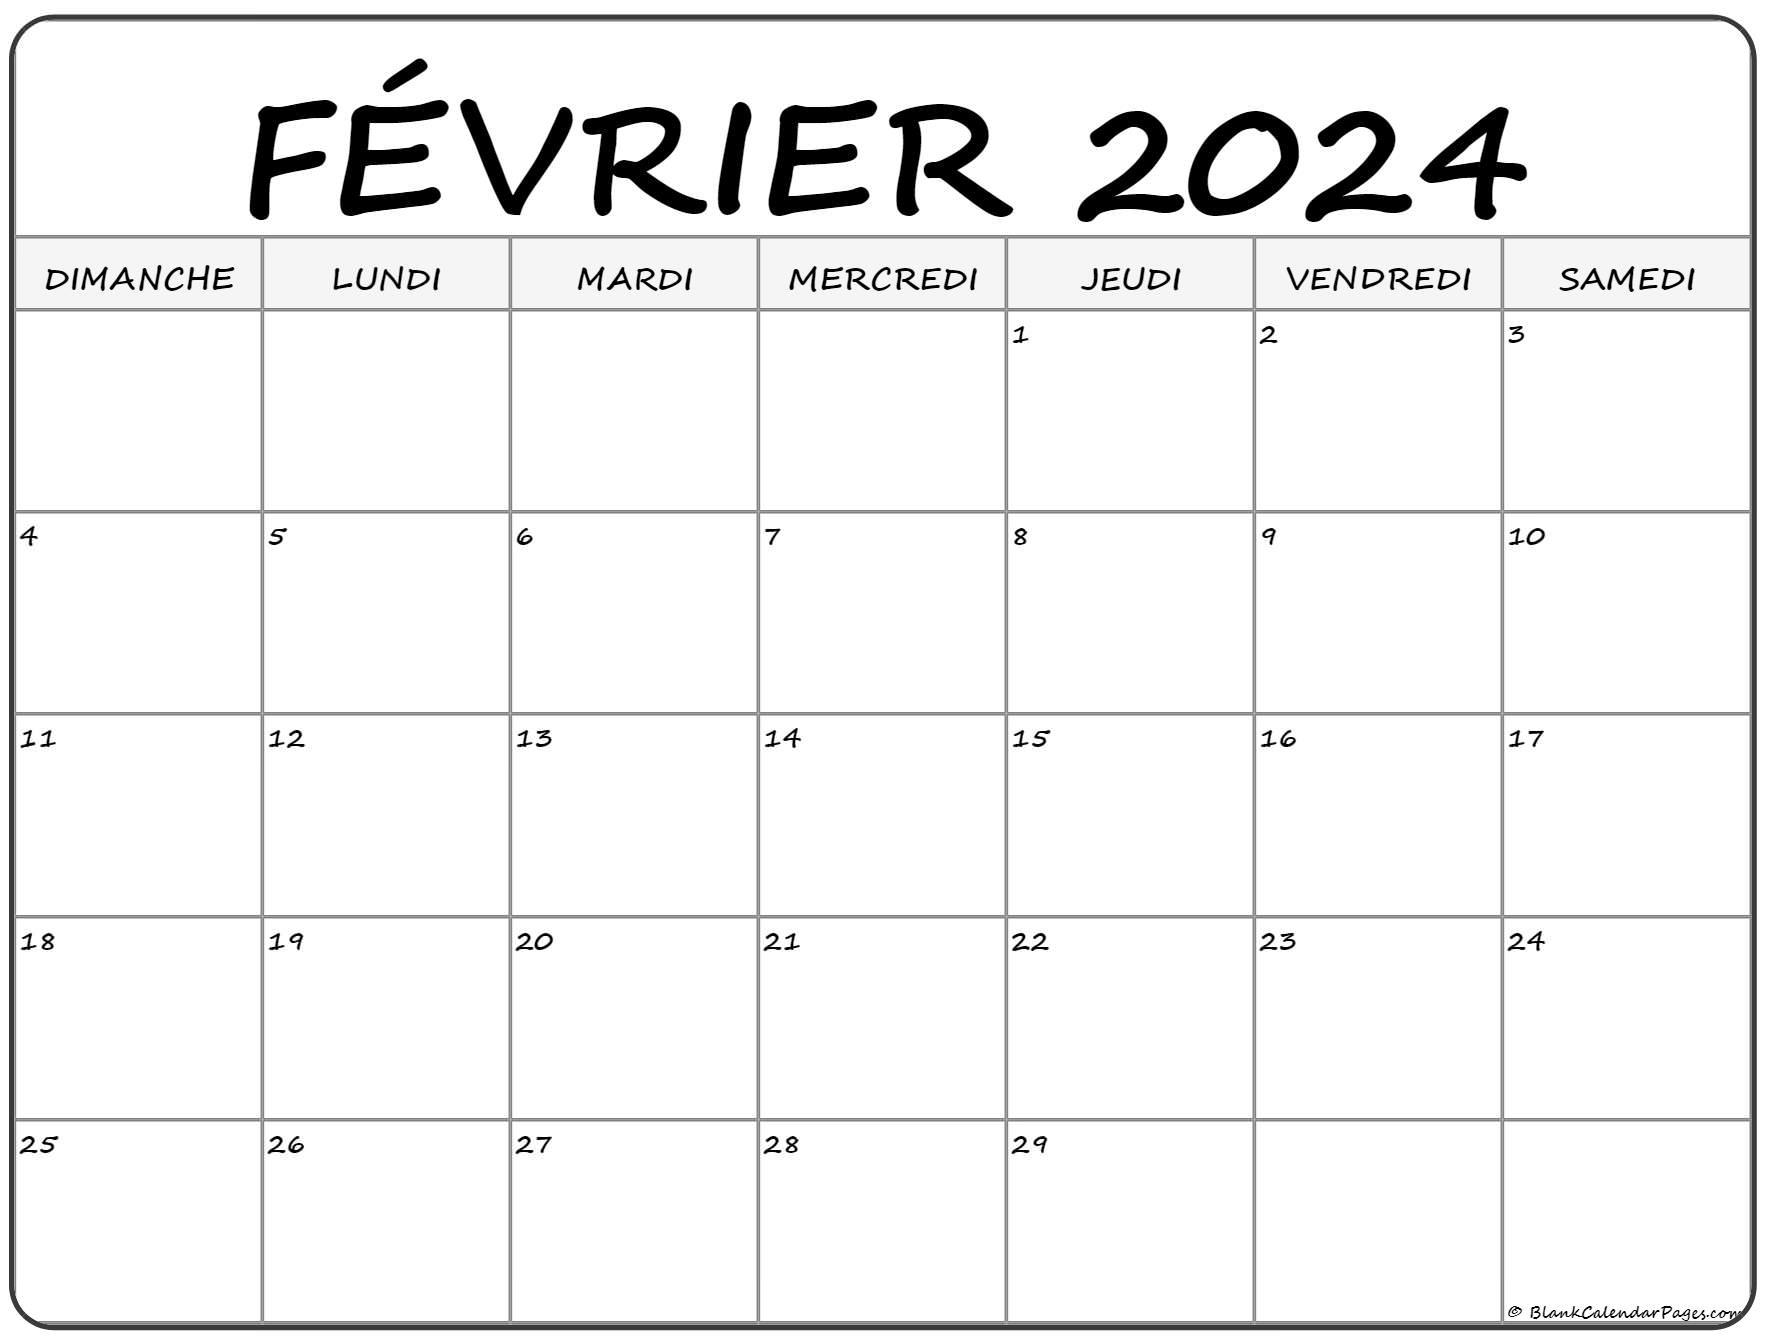 Calendrier à Imprimer Février 2022 février 2022 calendrier imprimable | Calendrier gratuit